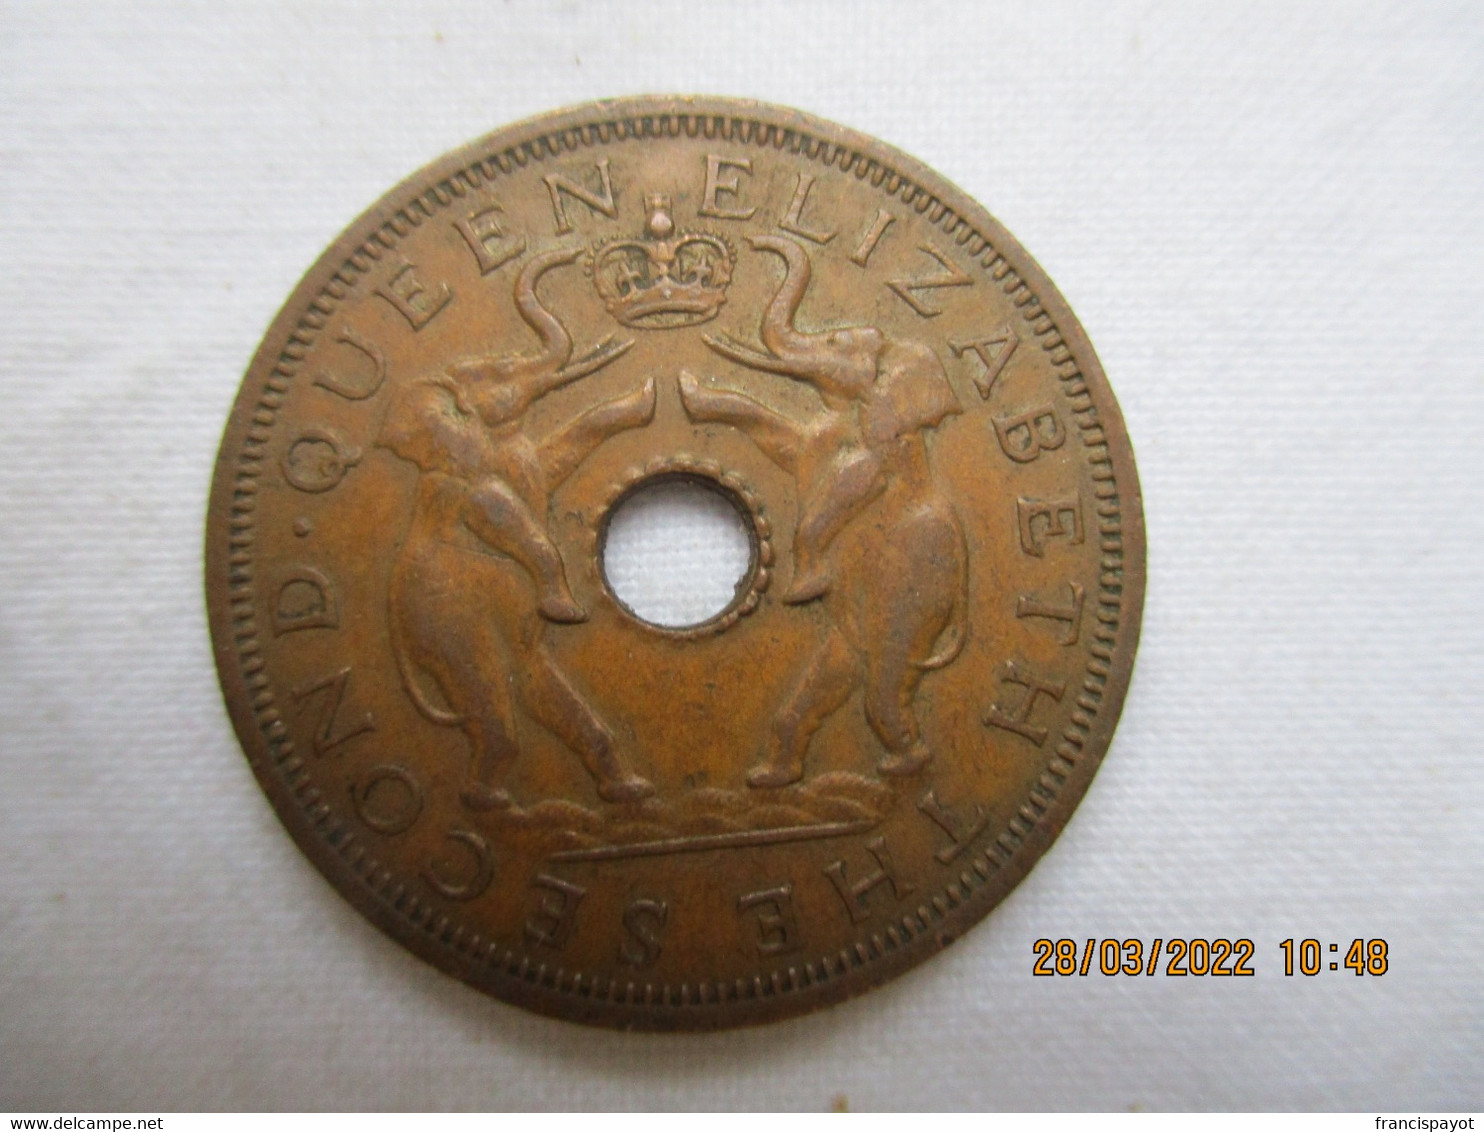 Rhodesia- Nyasaland: One Penny 1962 - Rhodesia